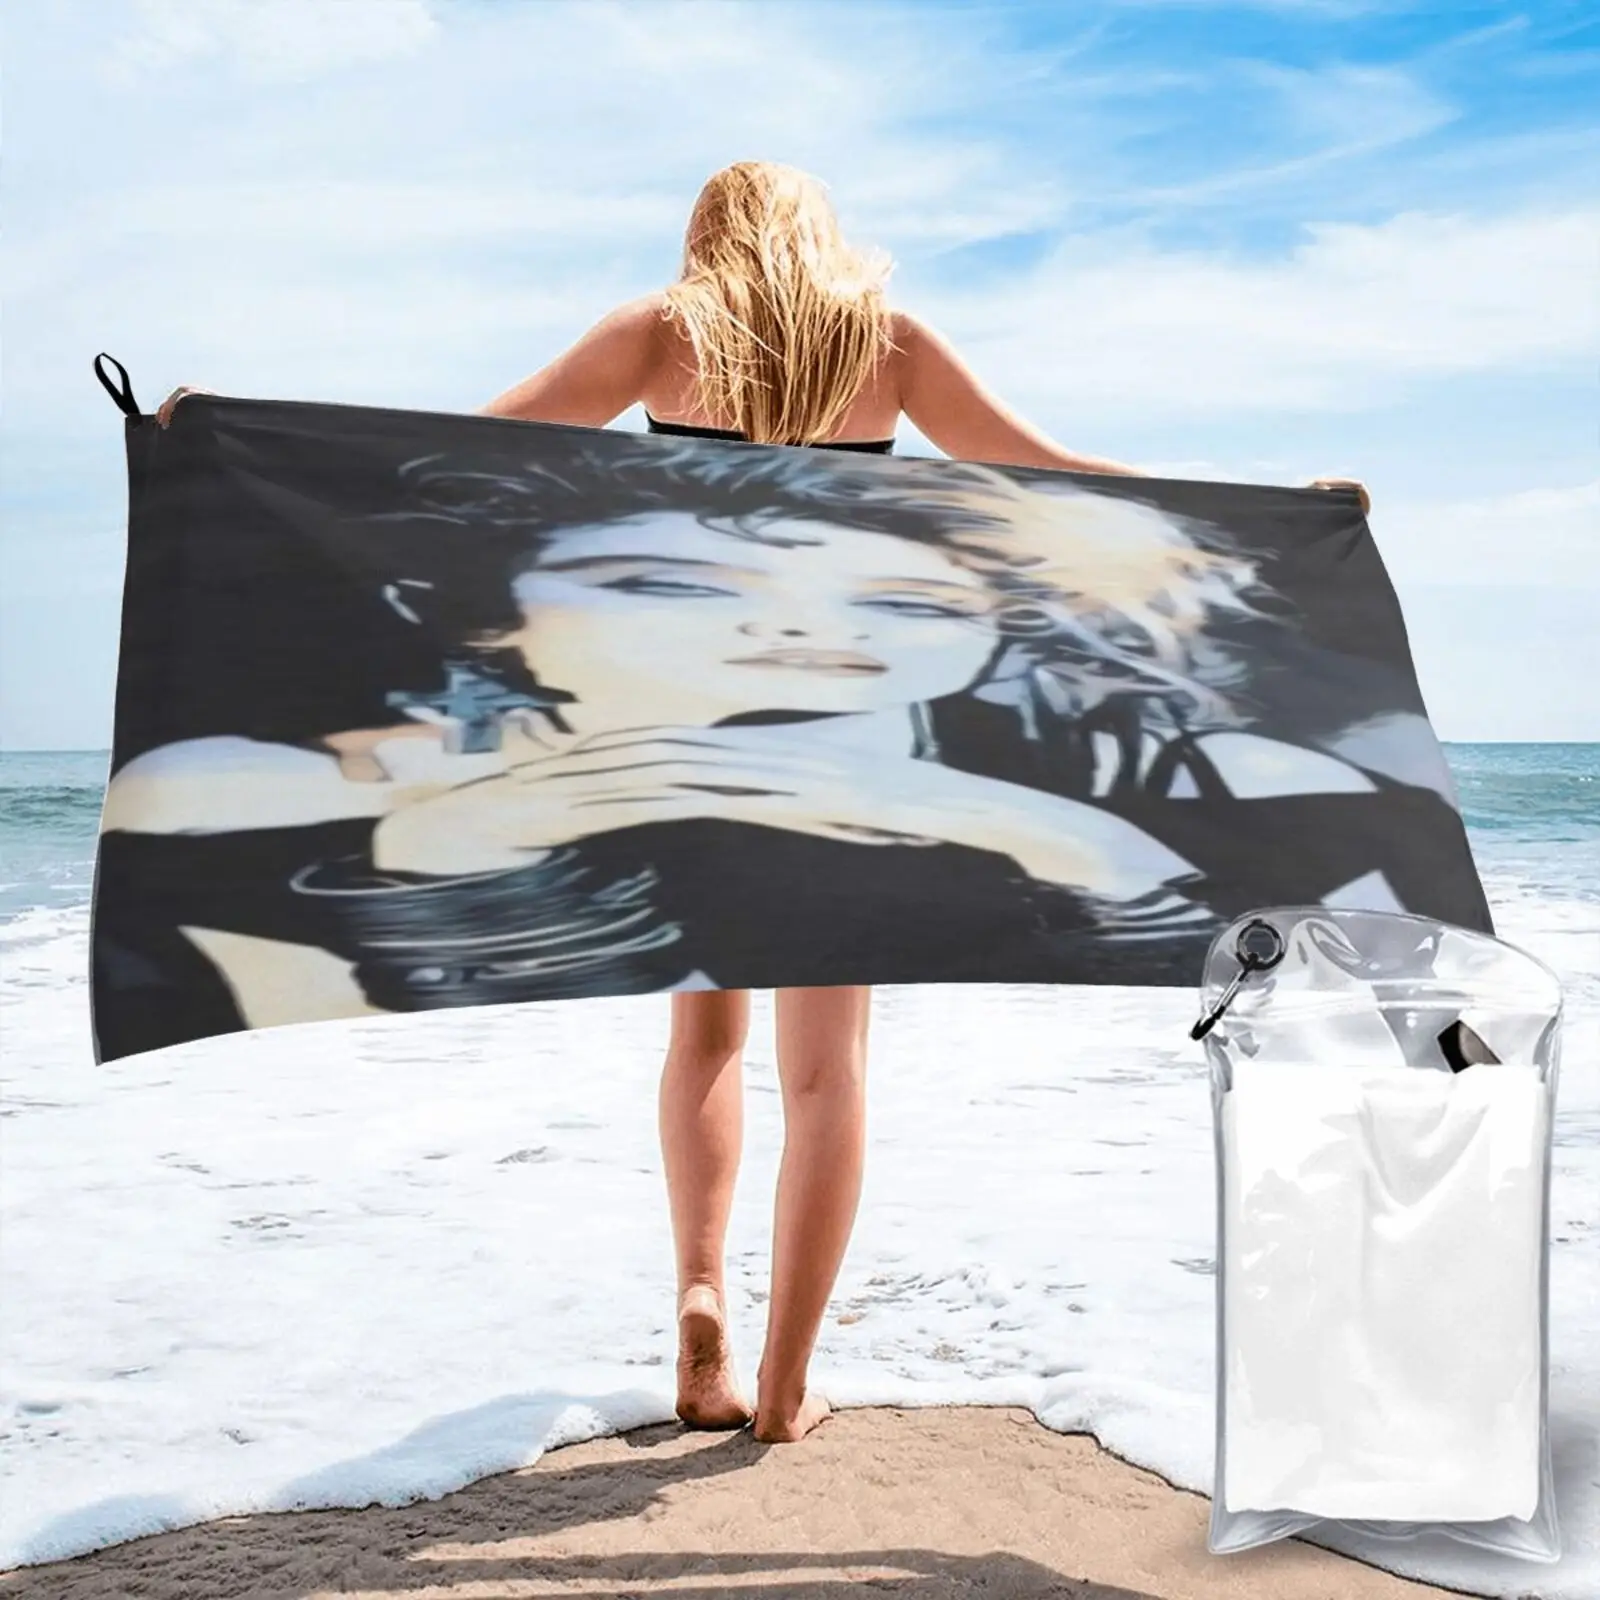 

Пляжное полотенце Pl002 с Мадонной концерта 80-х годов, роскошное пляжное полотенце, пляжный коврик для ванной и сауны, банное полотенце для вол...